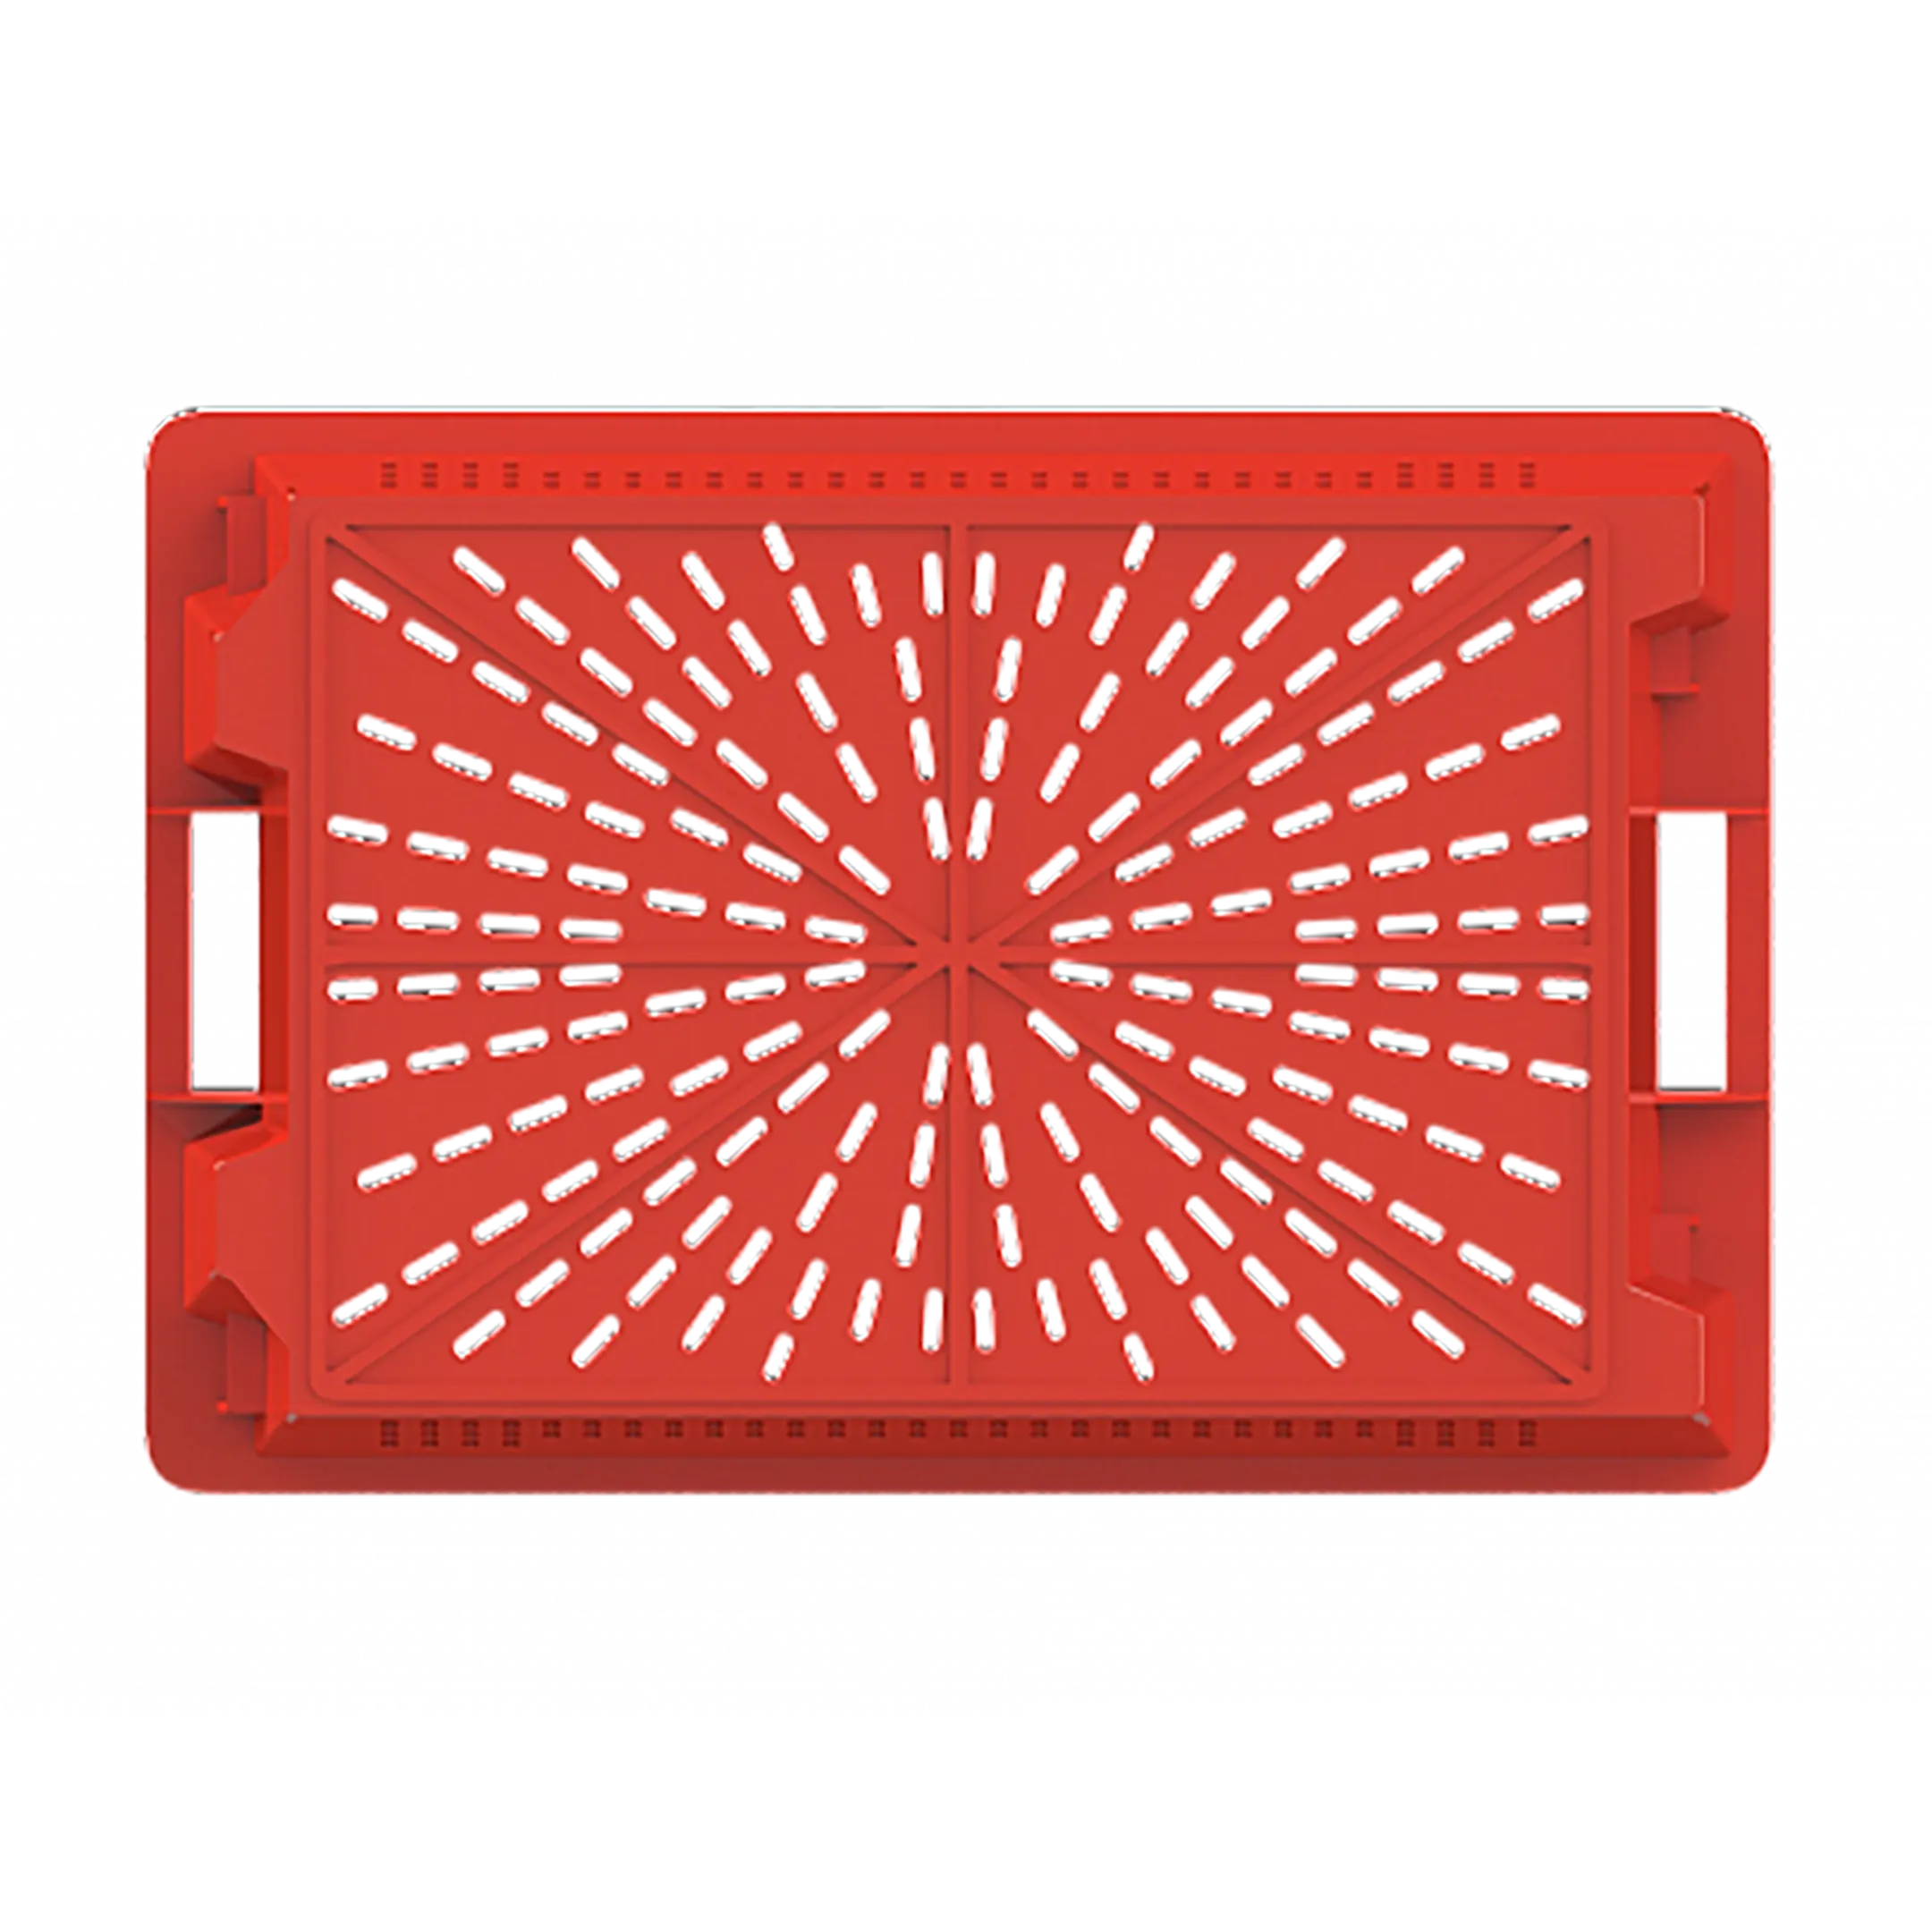 Ящик универсальный пищевой конусный перфорированный (600х400х200), без крышки (Красный)